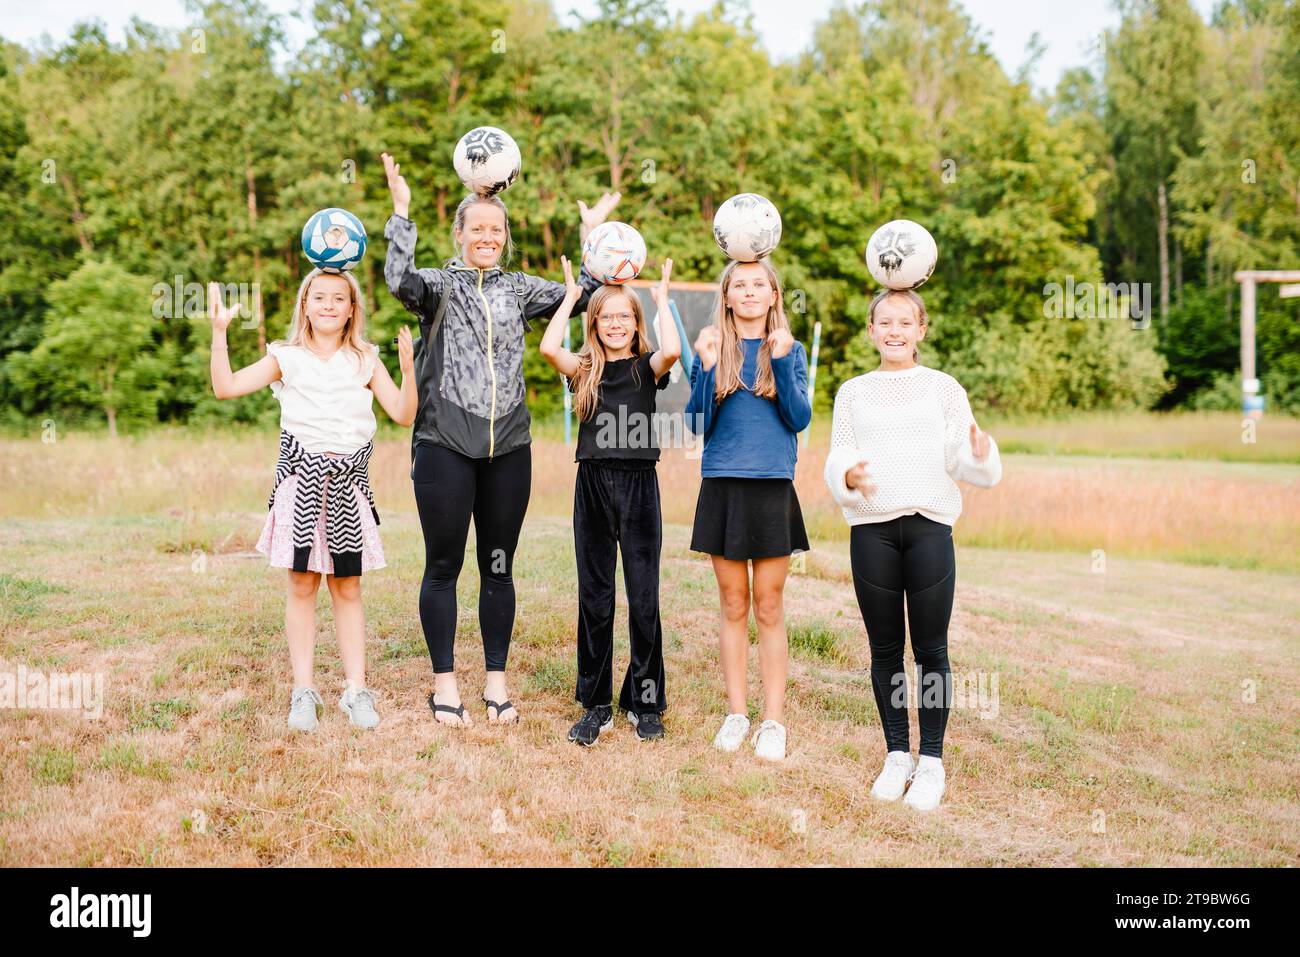 Femme heureuse avec des filles équilibrant des ballons de football sur la tête tout en se tenant debout sur l'herbe Banque D'Images